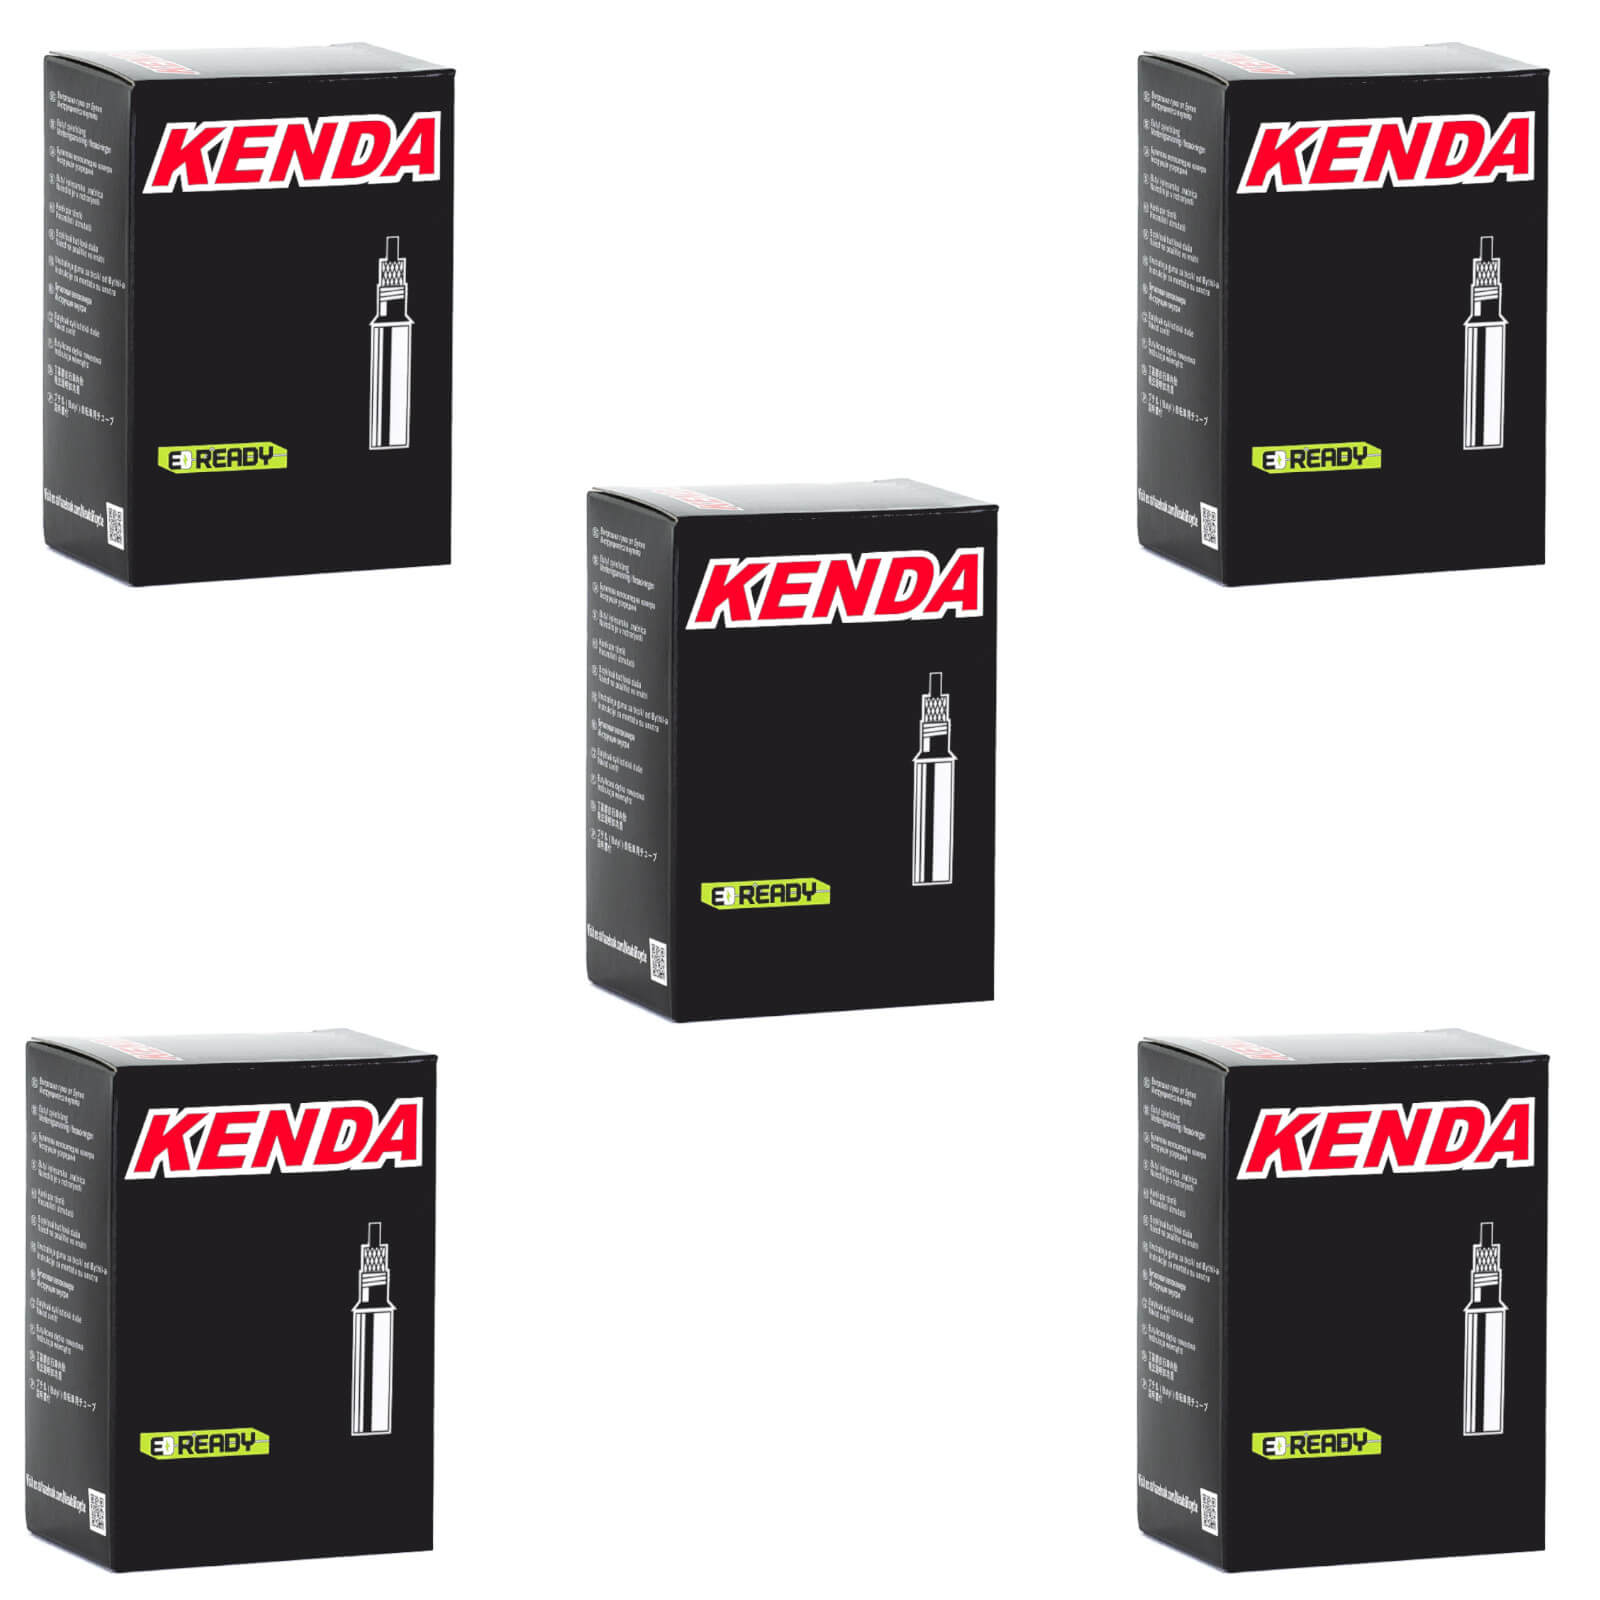 Kenda 700x28-35c Removable Core 60mm 700c Presta Valve Bike Inner Tube Pack of 5